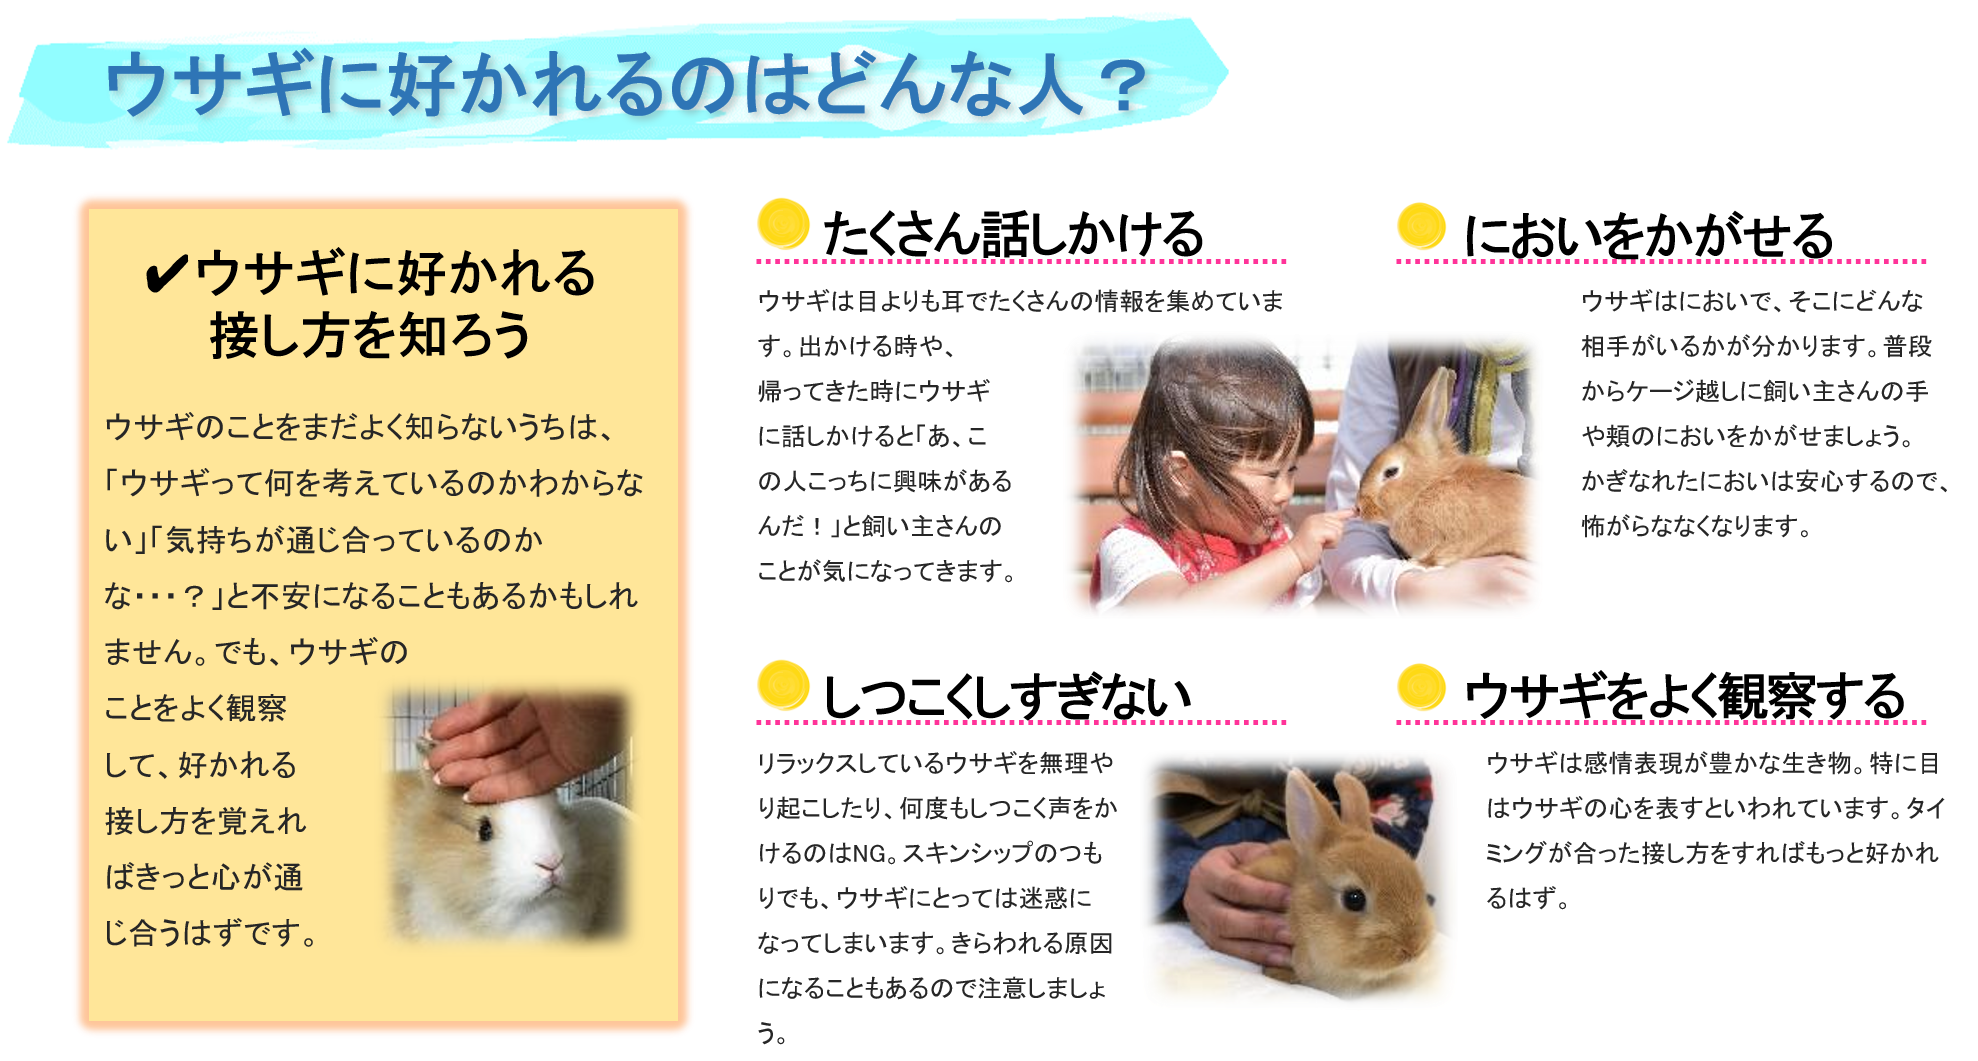 ウサギの飼い方 一般社団法人 日本コンパニオンラビット協会 Jcra